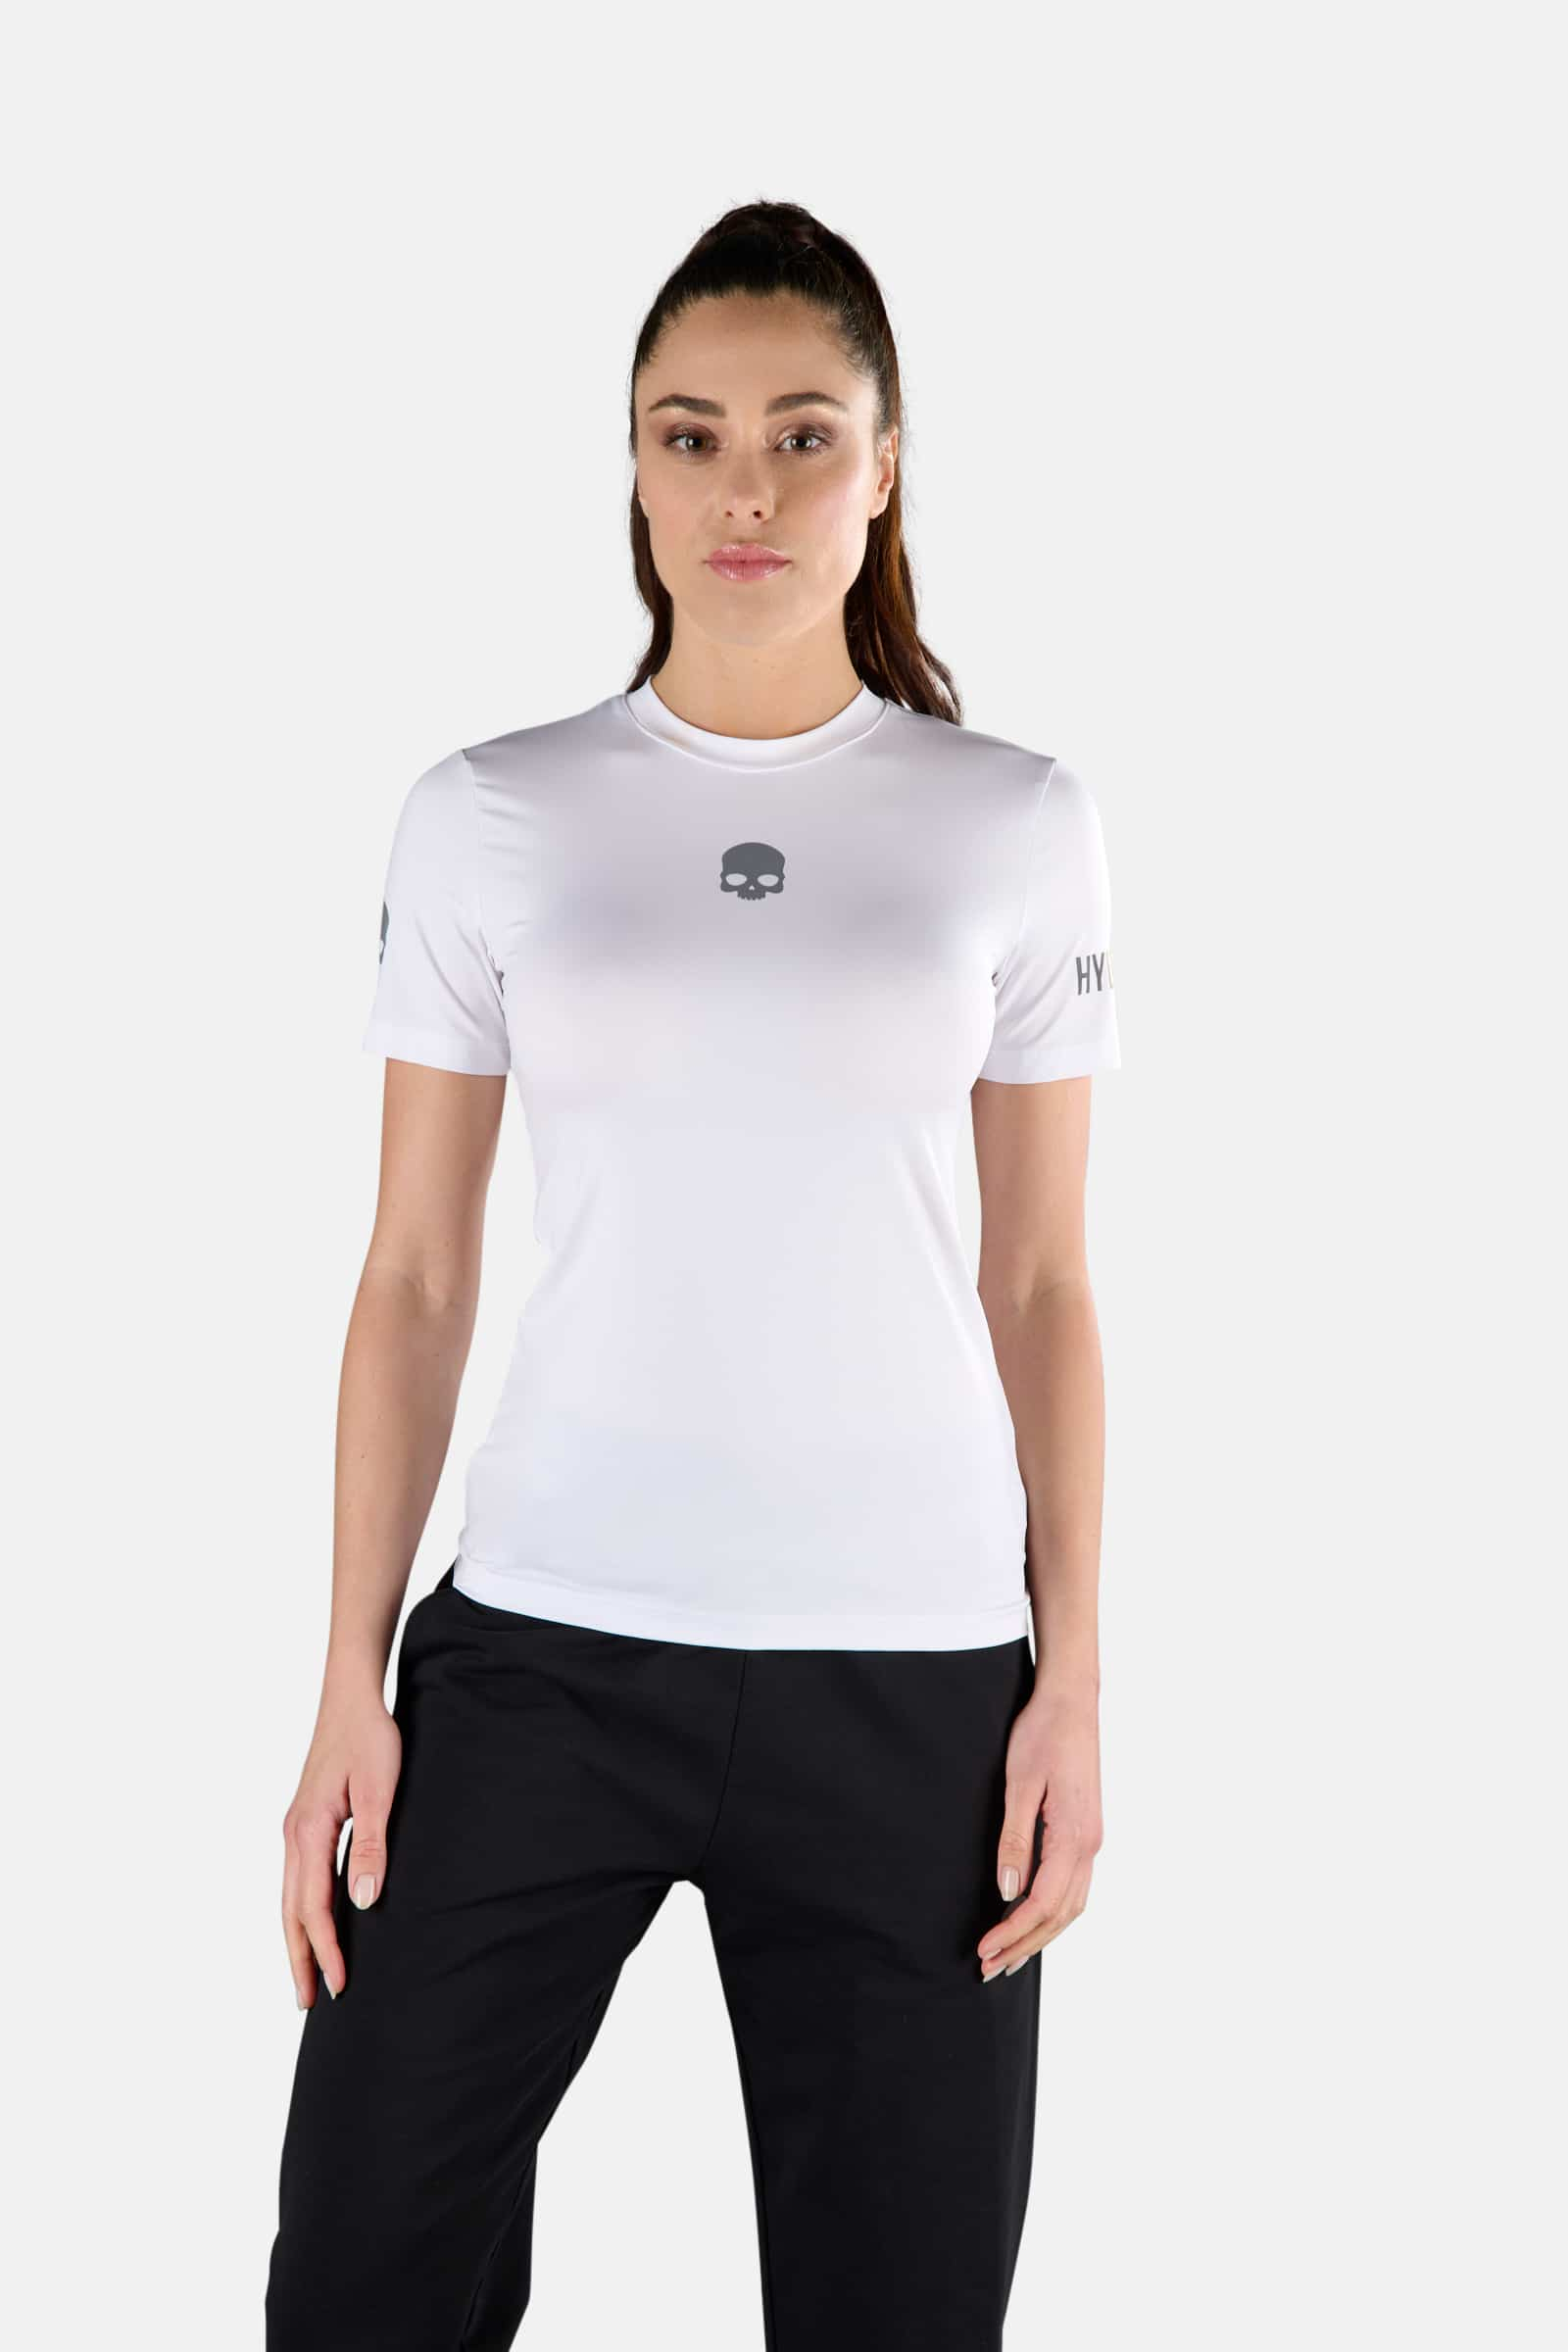 TECH TEE - WHITE - Hydrogen - Luxury Sportwear